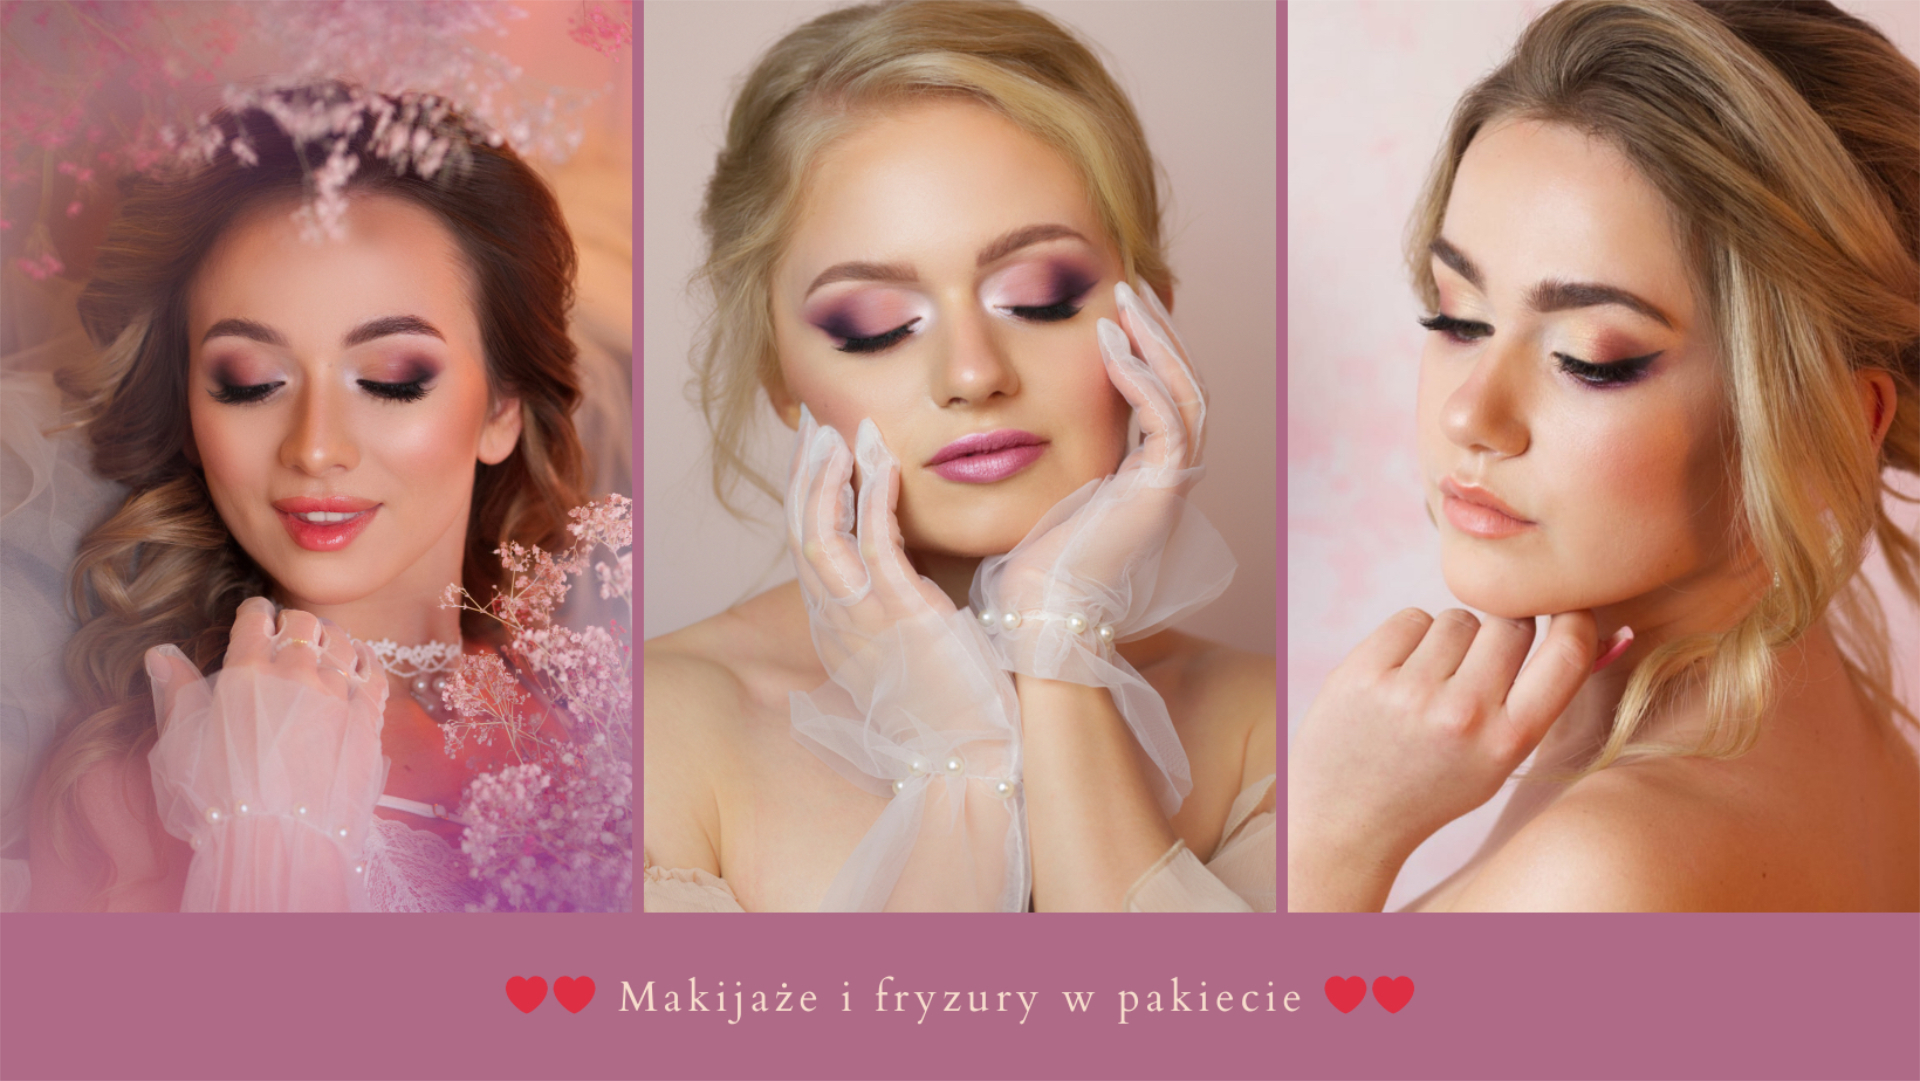 Makijaż i fryzura Kobiece Atelier | Uroda, makijaż ślubny Gdynia, pomorskie - cover